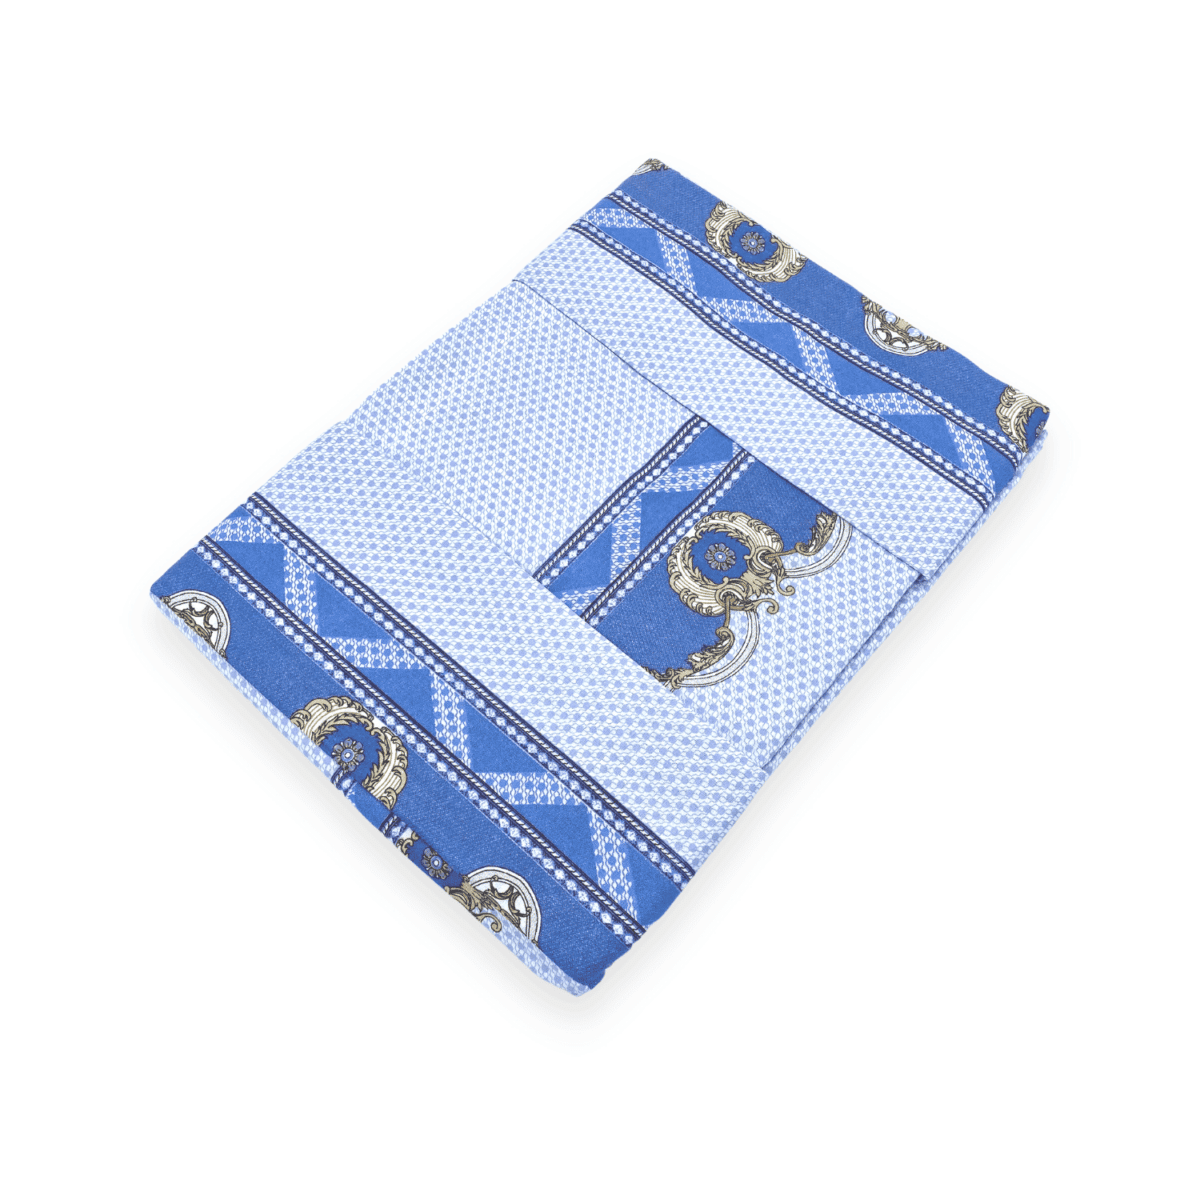 royal-azzurro-pauline-completo-lenzuola-cotone-blu-avio-turchese-medaglioni-oro-fold